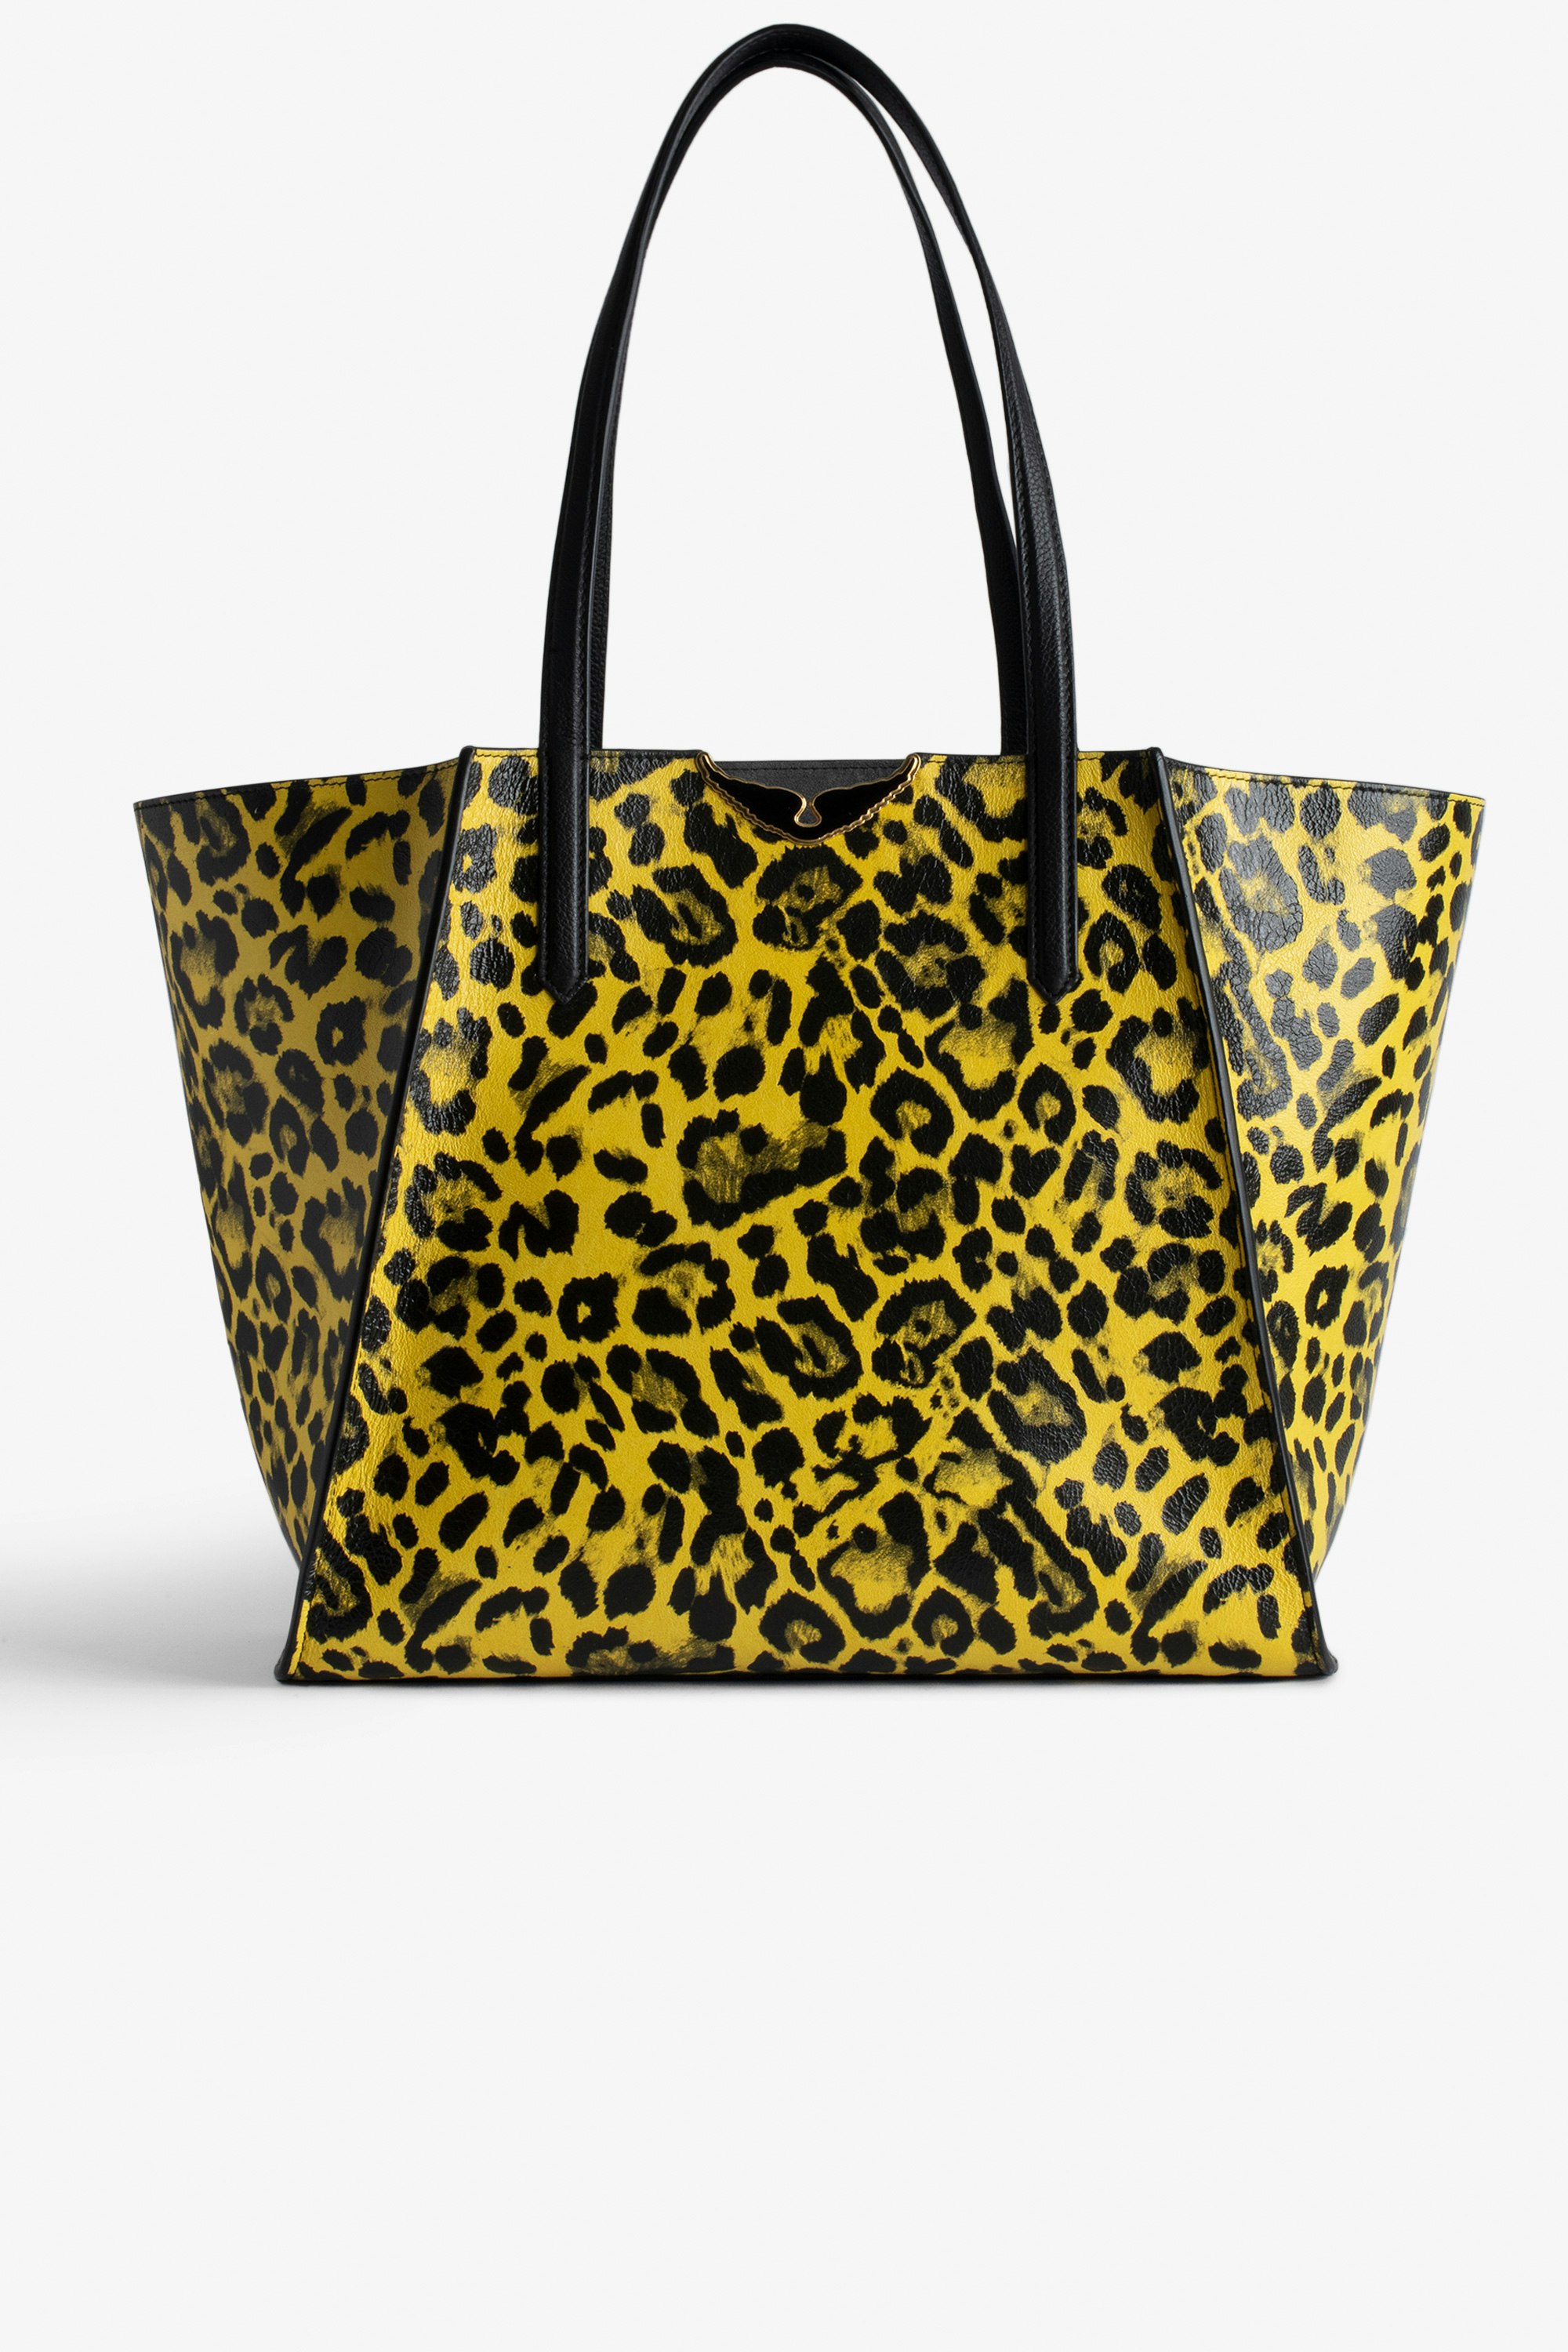 Sac Le Borderline Léopard Sac cabas réversible en cuir brillant jaune imprimé léopard à anse et ailes en métal femme.